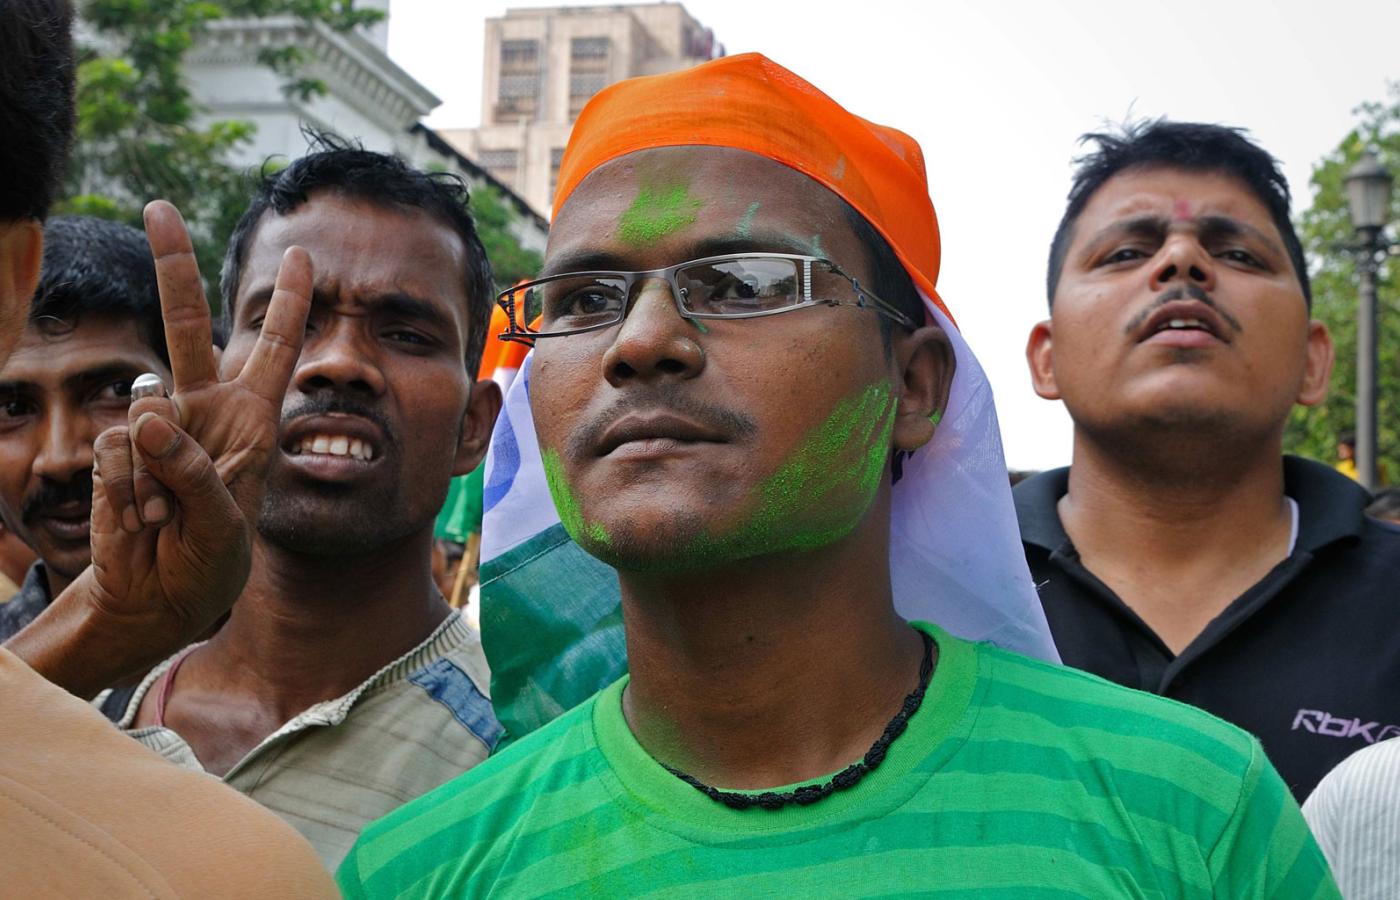 Z czół ścieka zielony proszek. Niektórzy osłaniają głowy chustkami i partyjnymi sztandarami przed żarem lejącym się z nieba. Zielony znak na czole to symbol poparcia dla partii nowej premier.